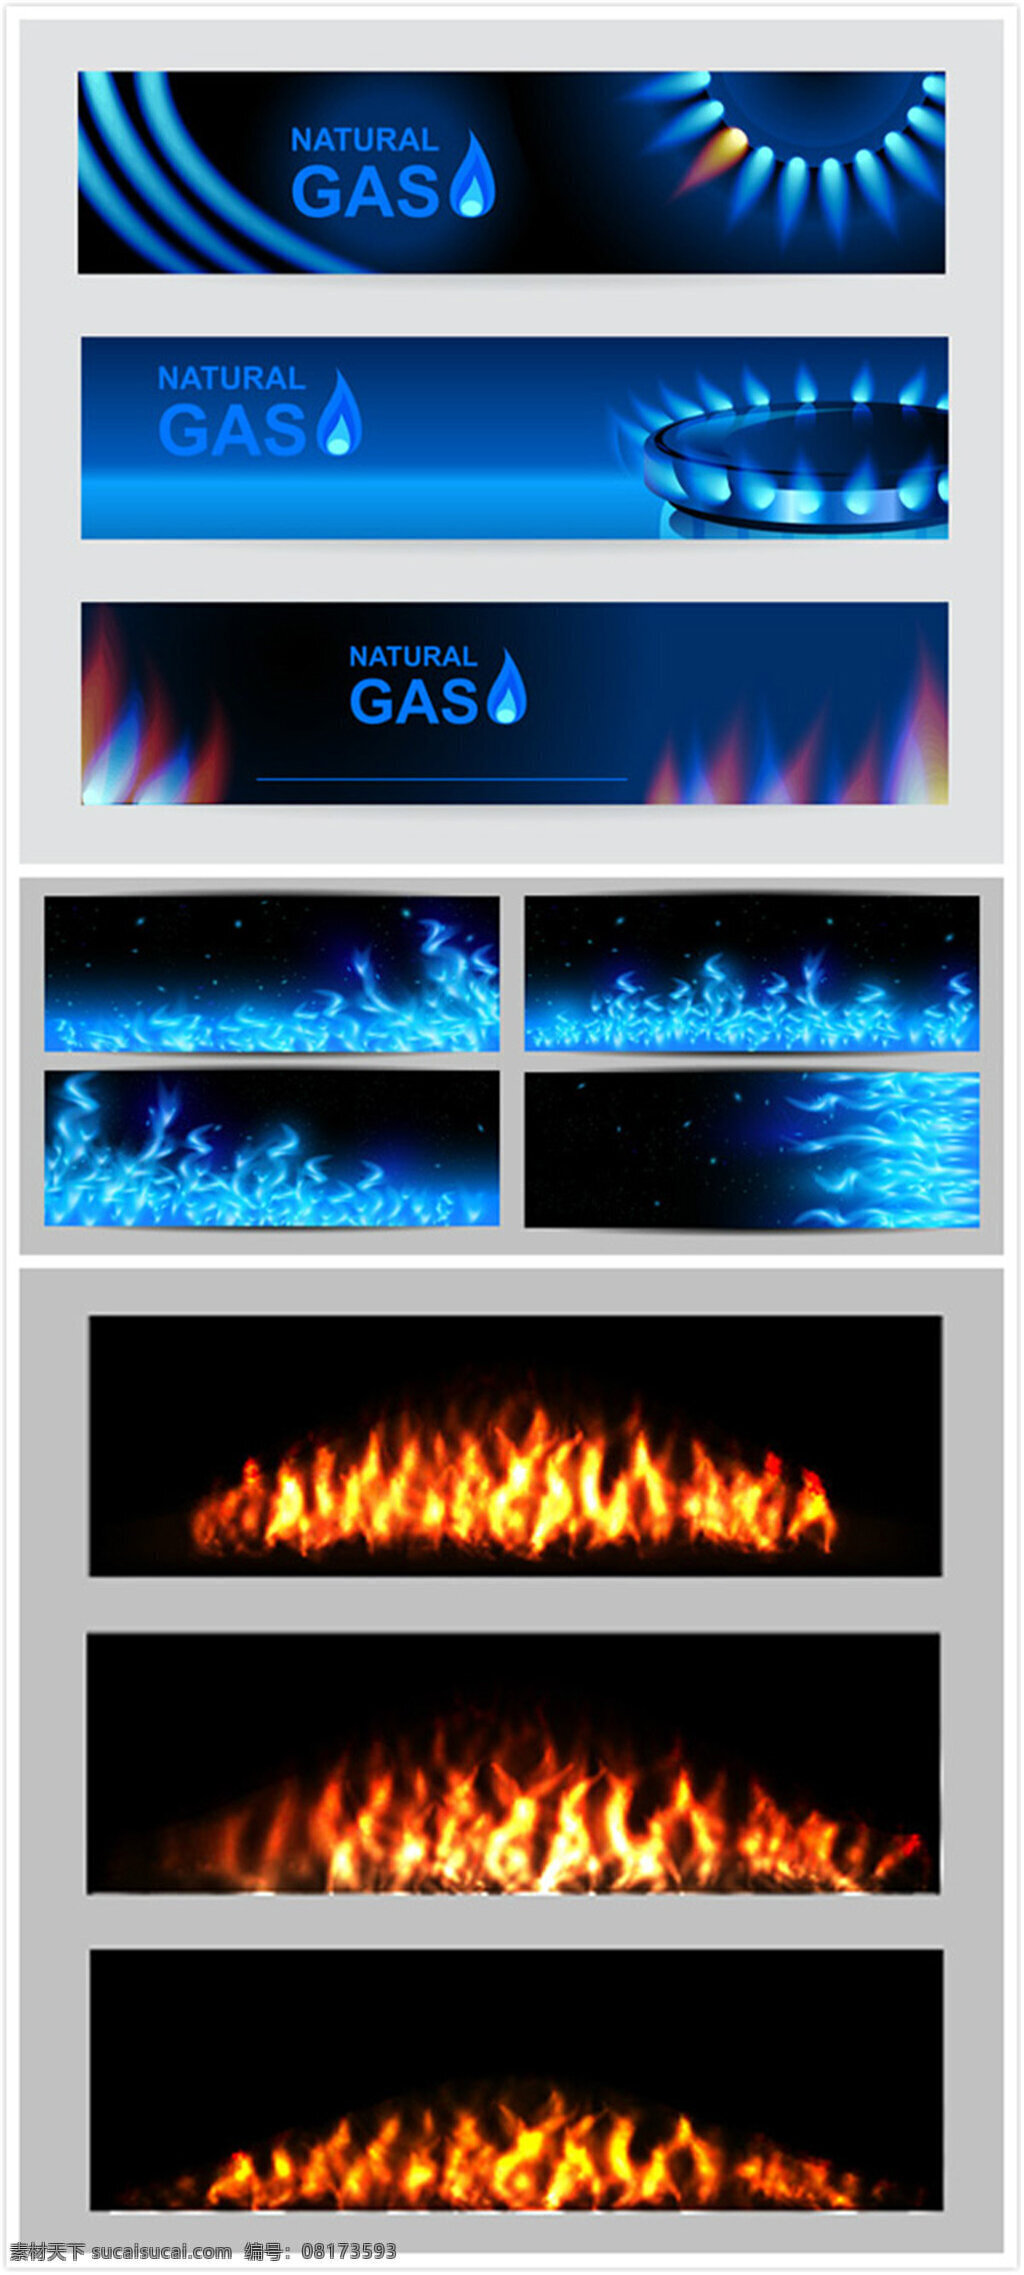 燃气灶 火焰 矢量 火苗 蓝色火焰 蓝色火焰图片 煤气灶 燃气灶火焰 矢量素材 黑色